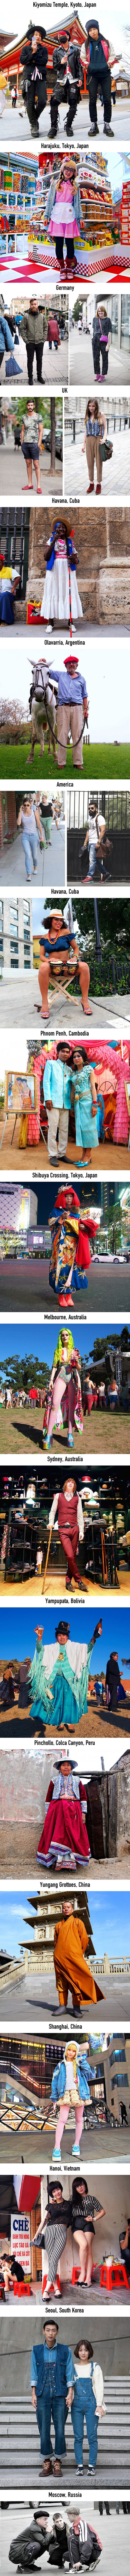 Fotografije koje prikazuju raznolikost odijevanje u različitim krajevima svijeta